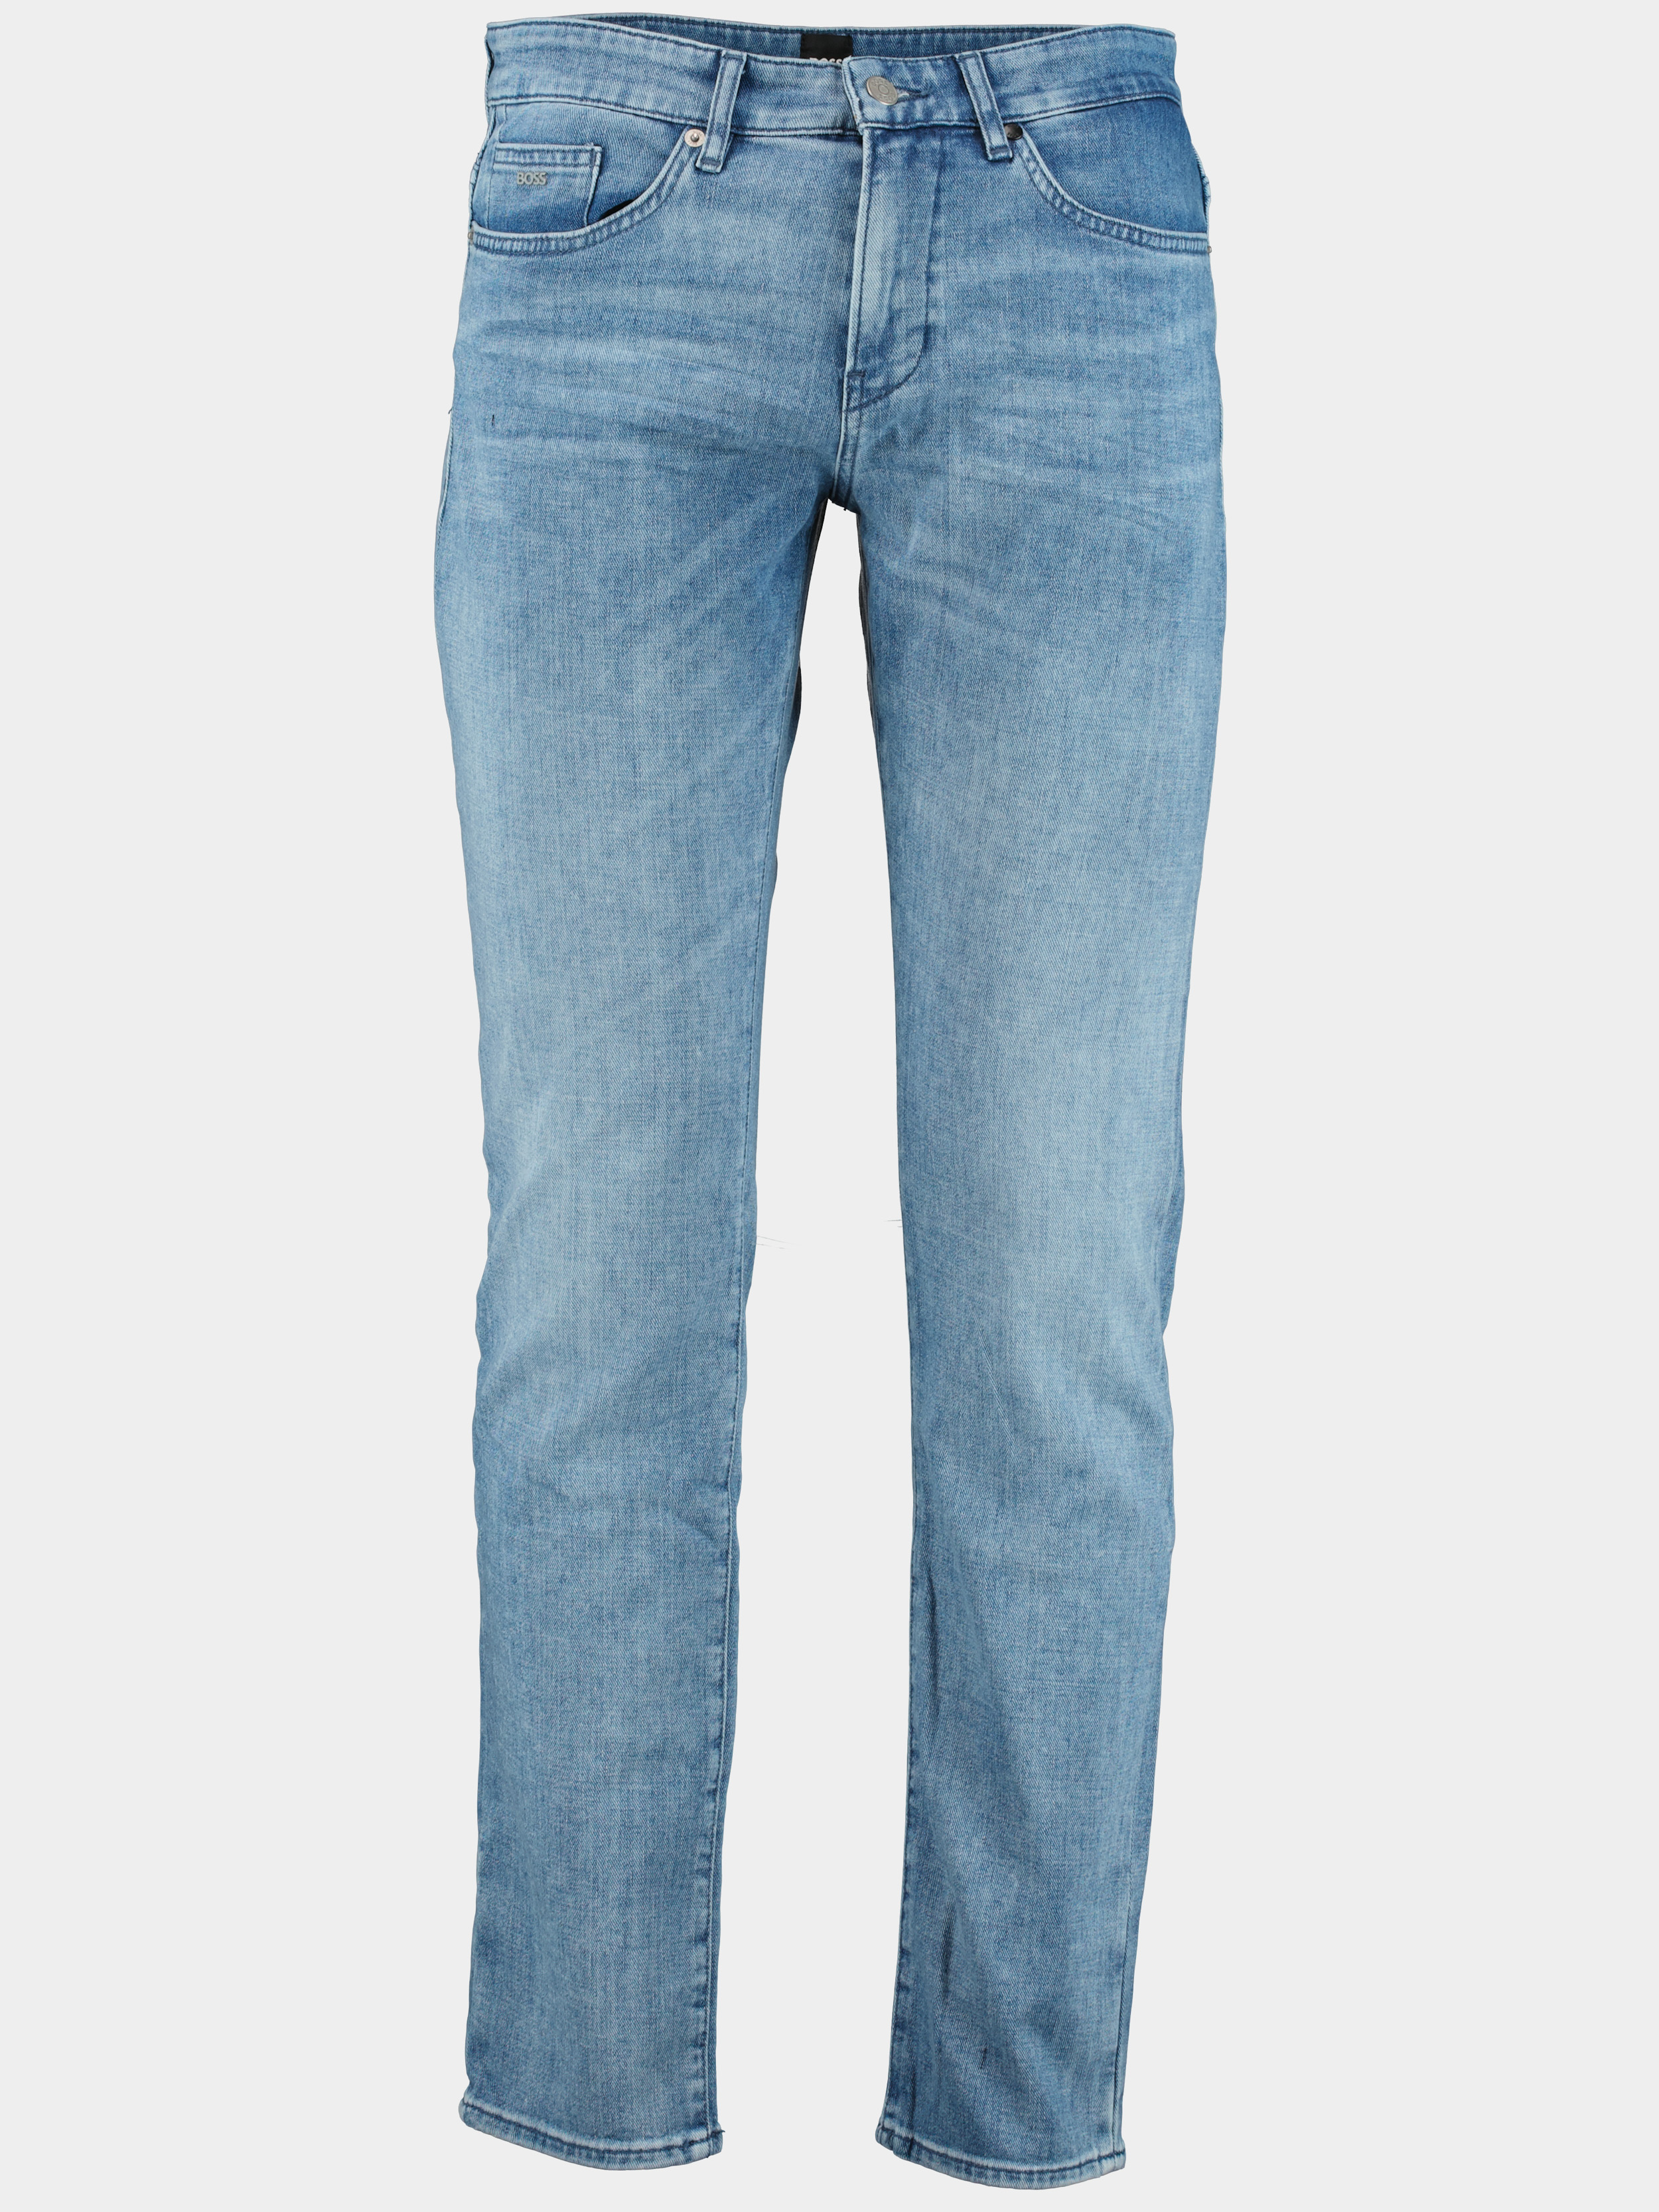 Hugo Boss Jeans | Online Kopen | Men Shop